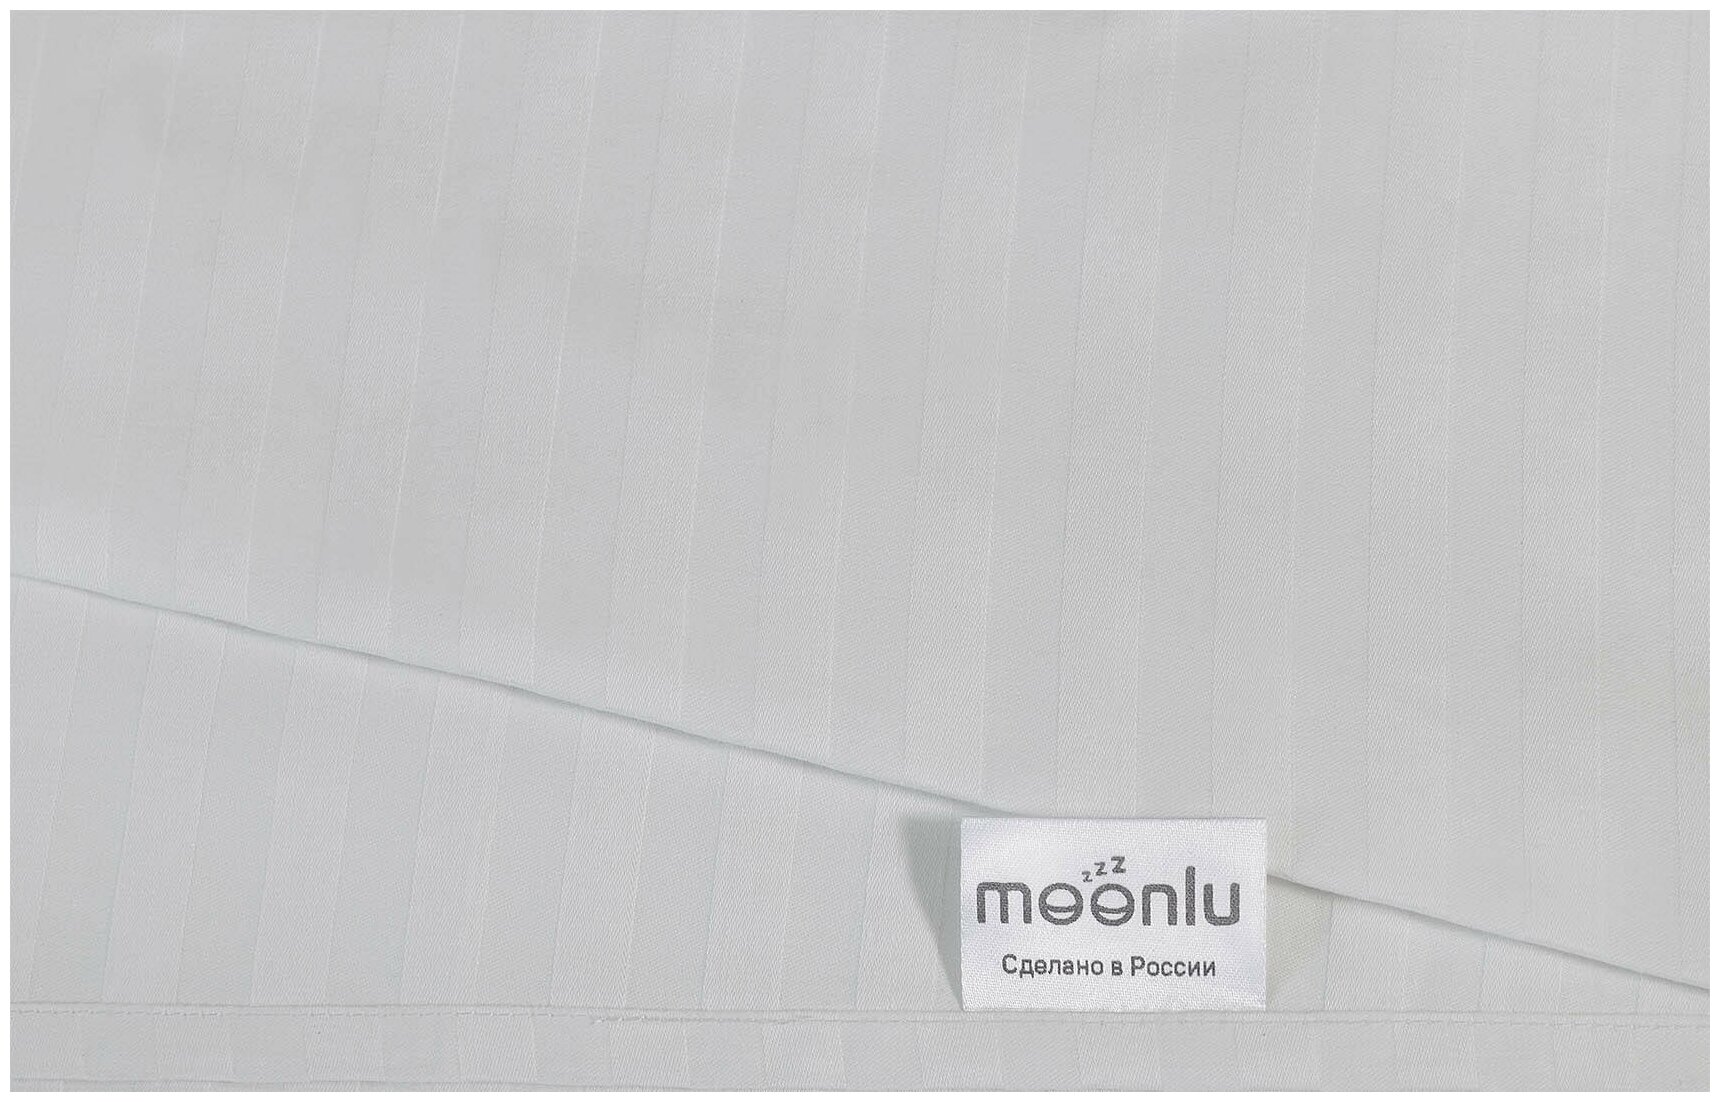 Простыня на резинке moonlu Cтрайп-сатин, белая, 160x200 см